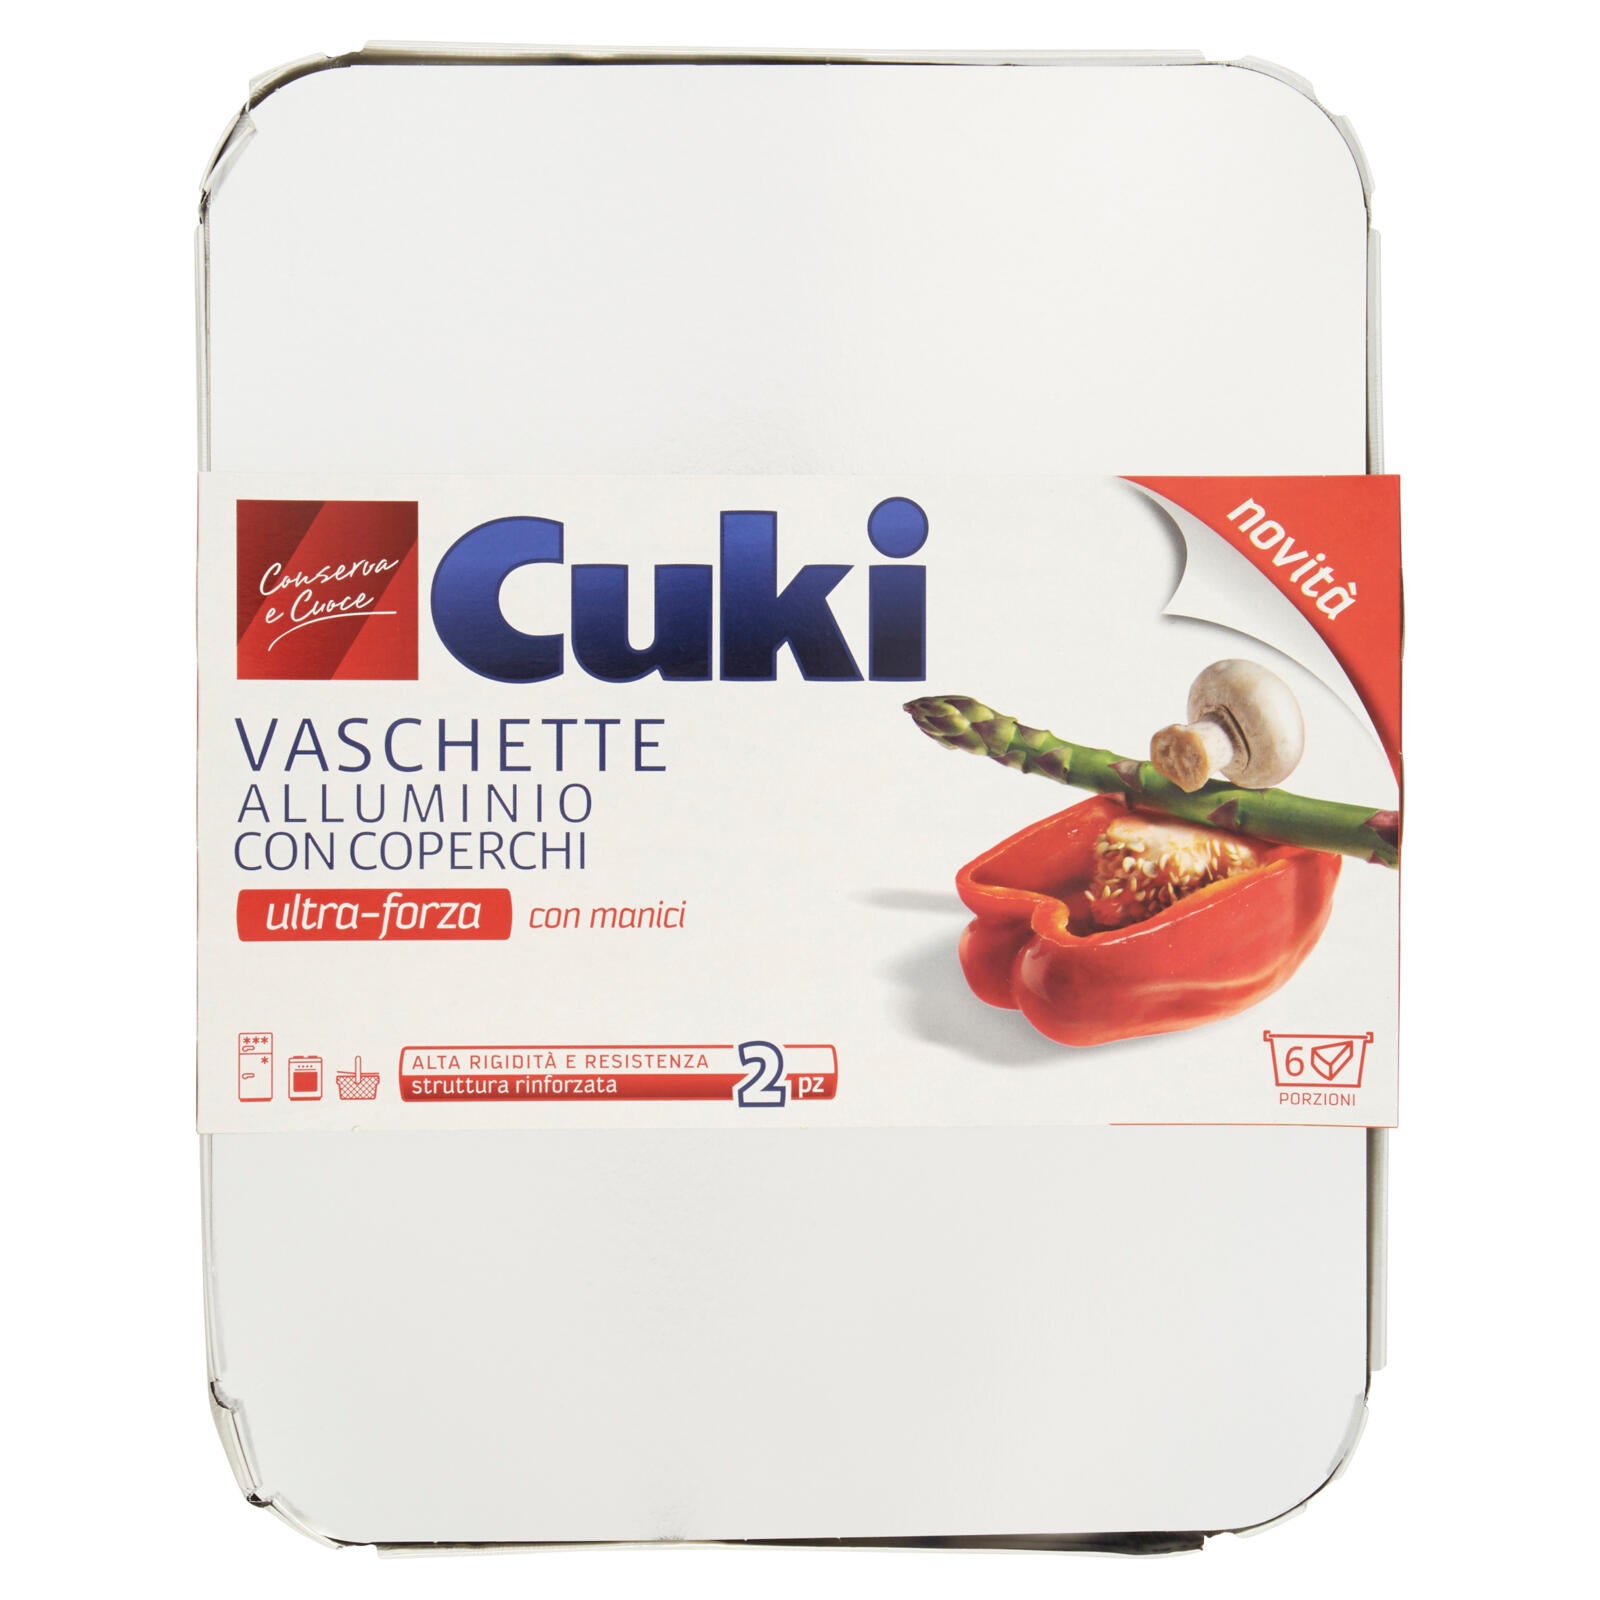 Cuki Conserva e Cuoce Vaschette Alluminio con Coperchi 6 porzioni 2 pz ->